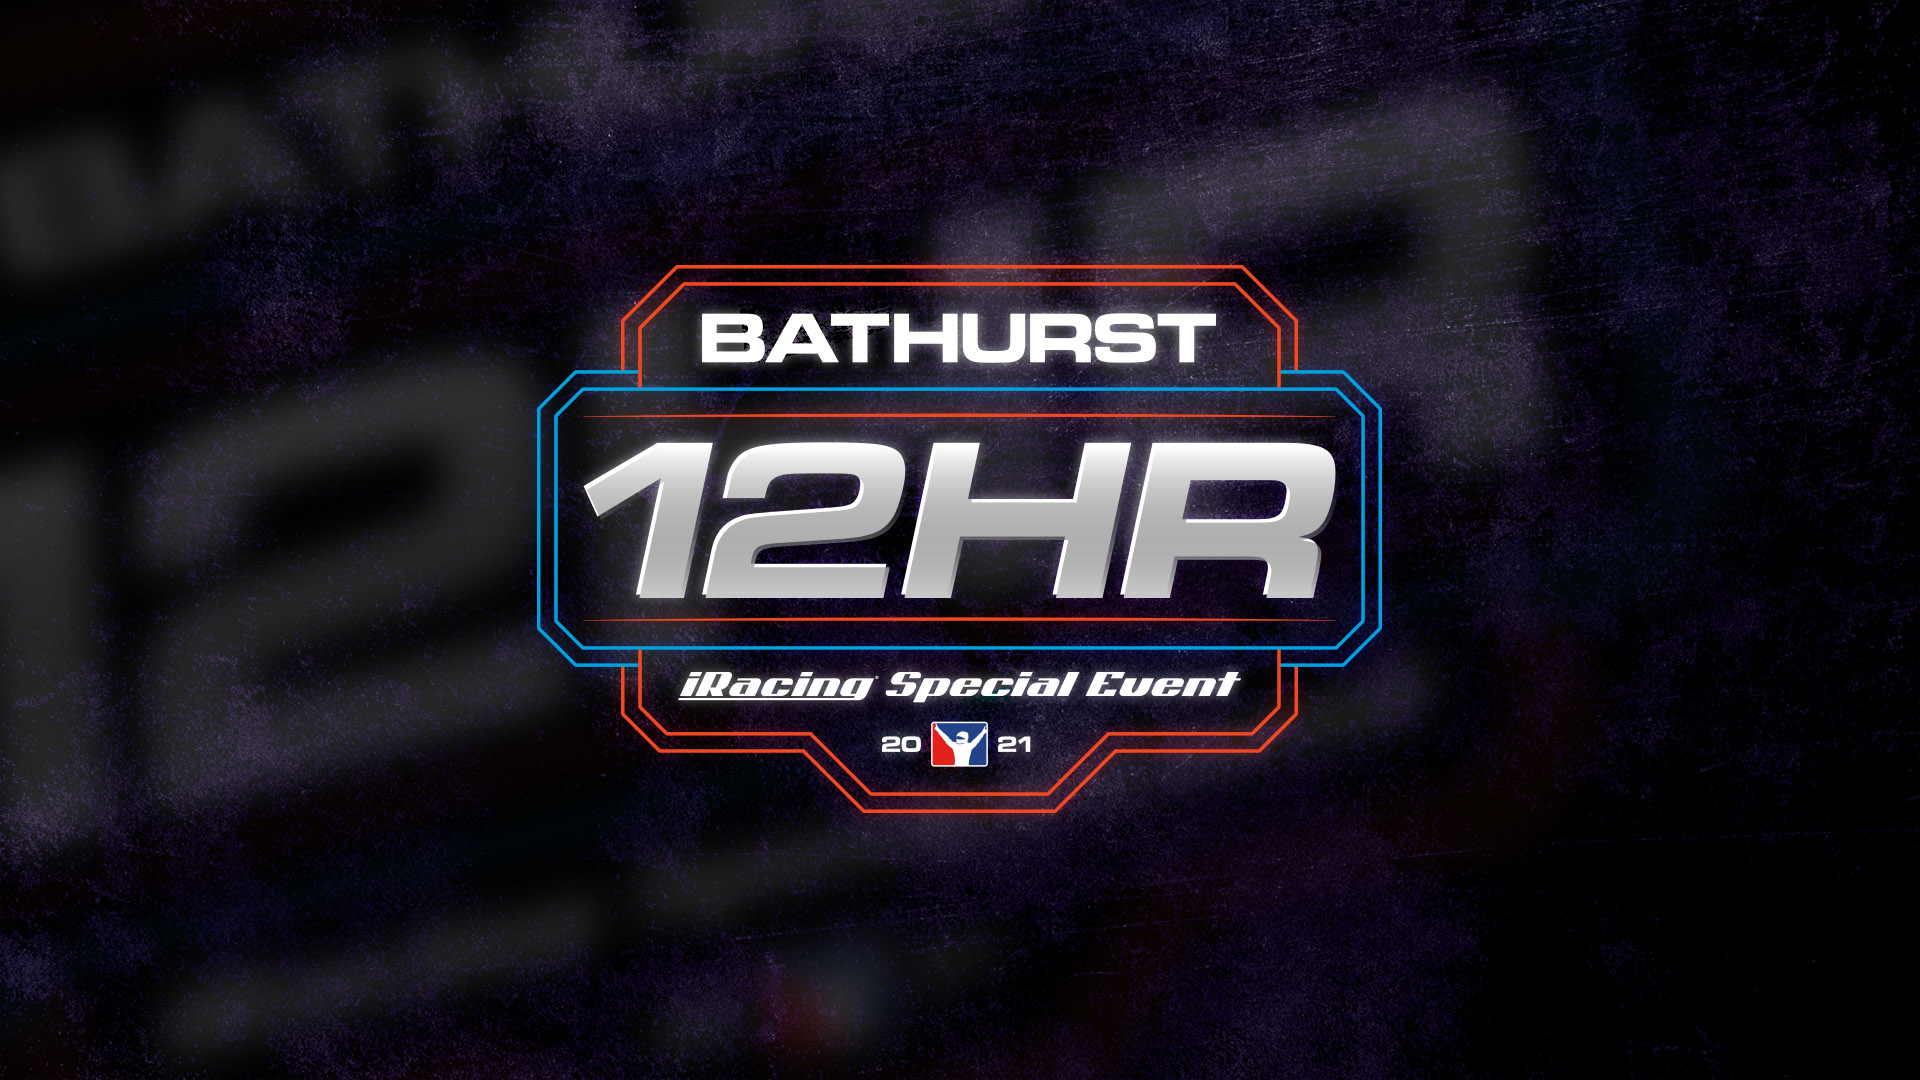 Bathurst-12hr-feature-1.jpg